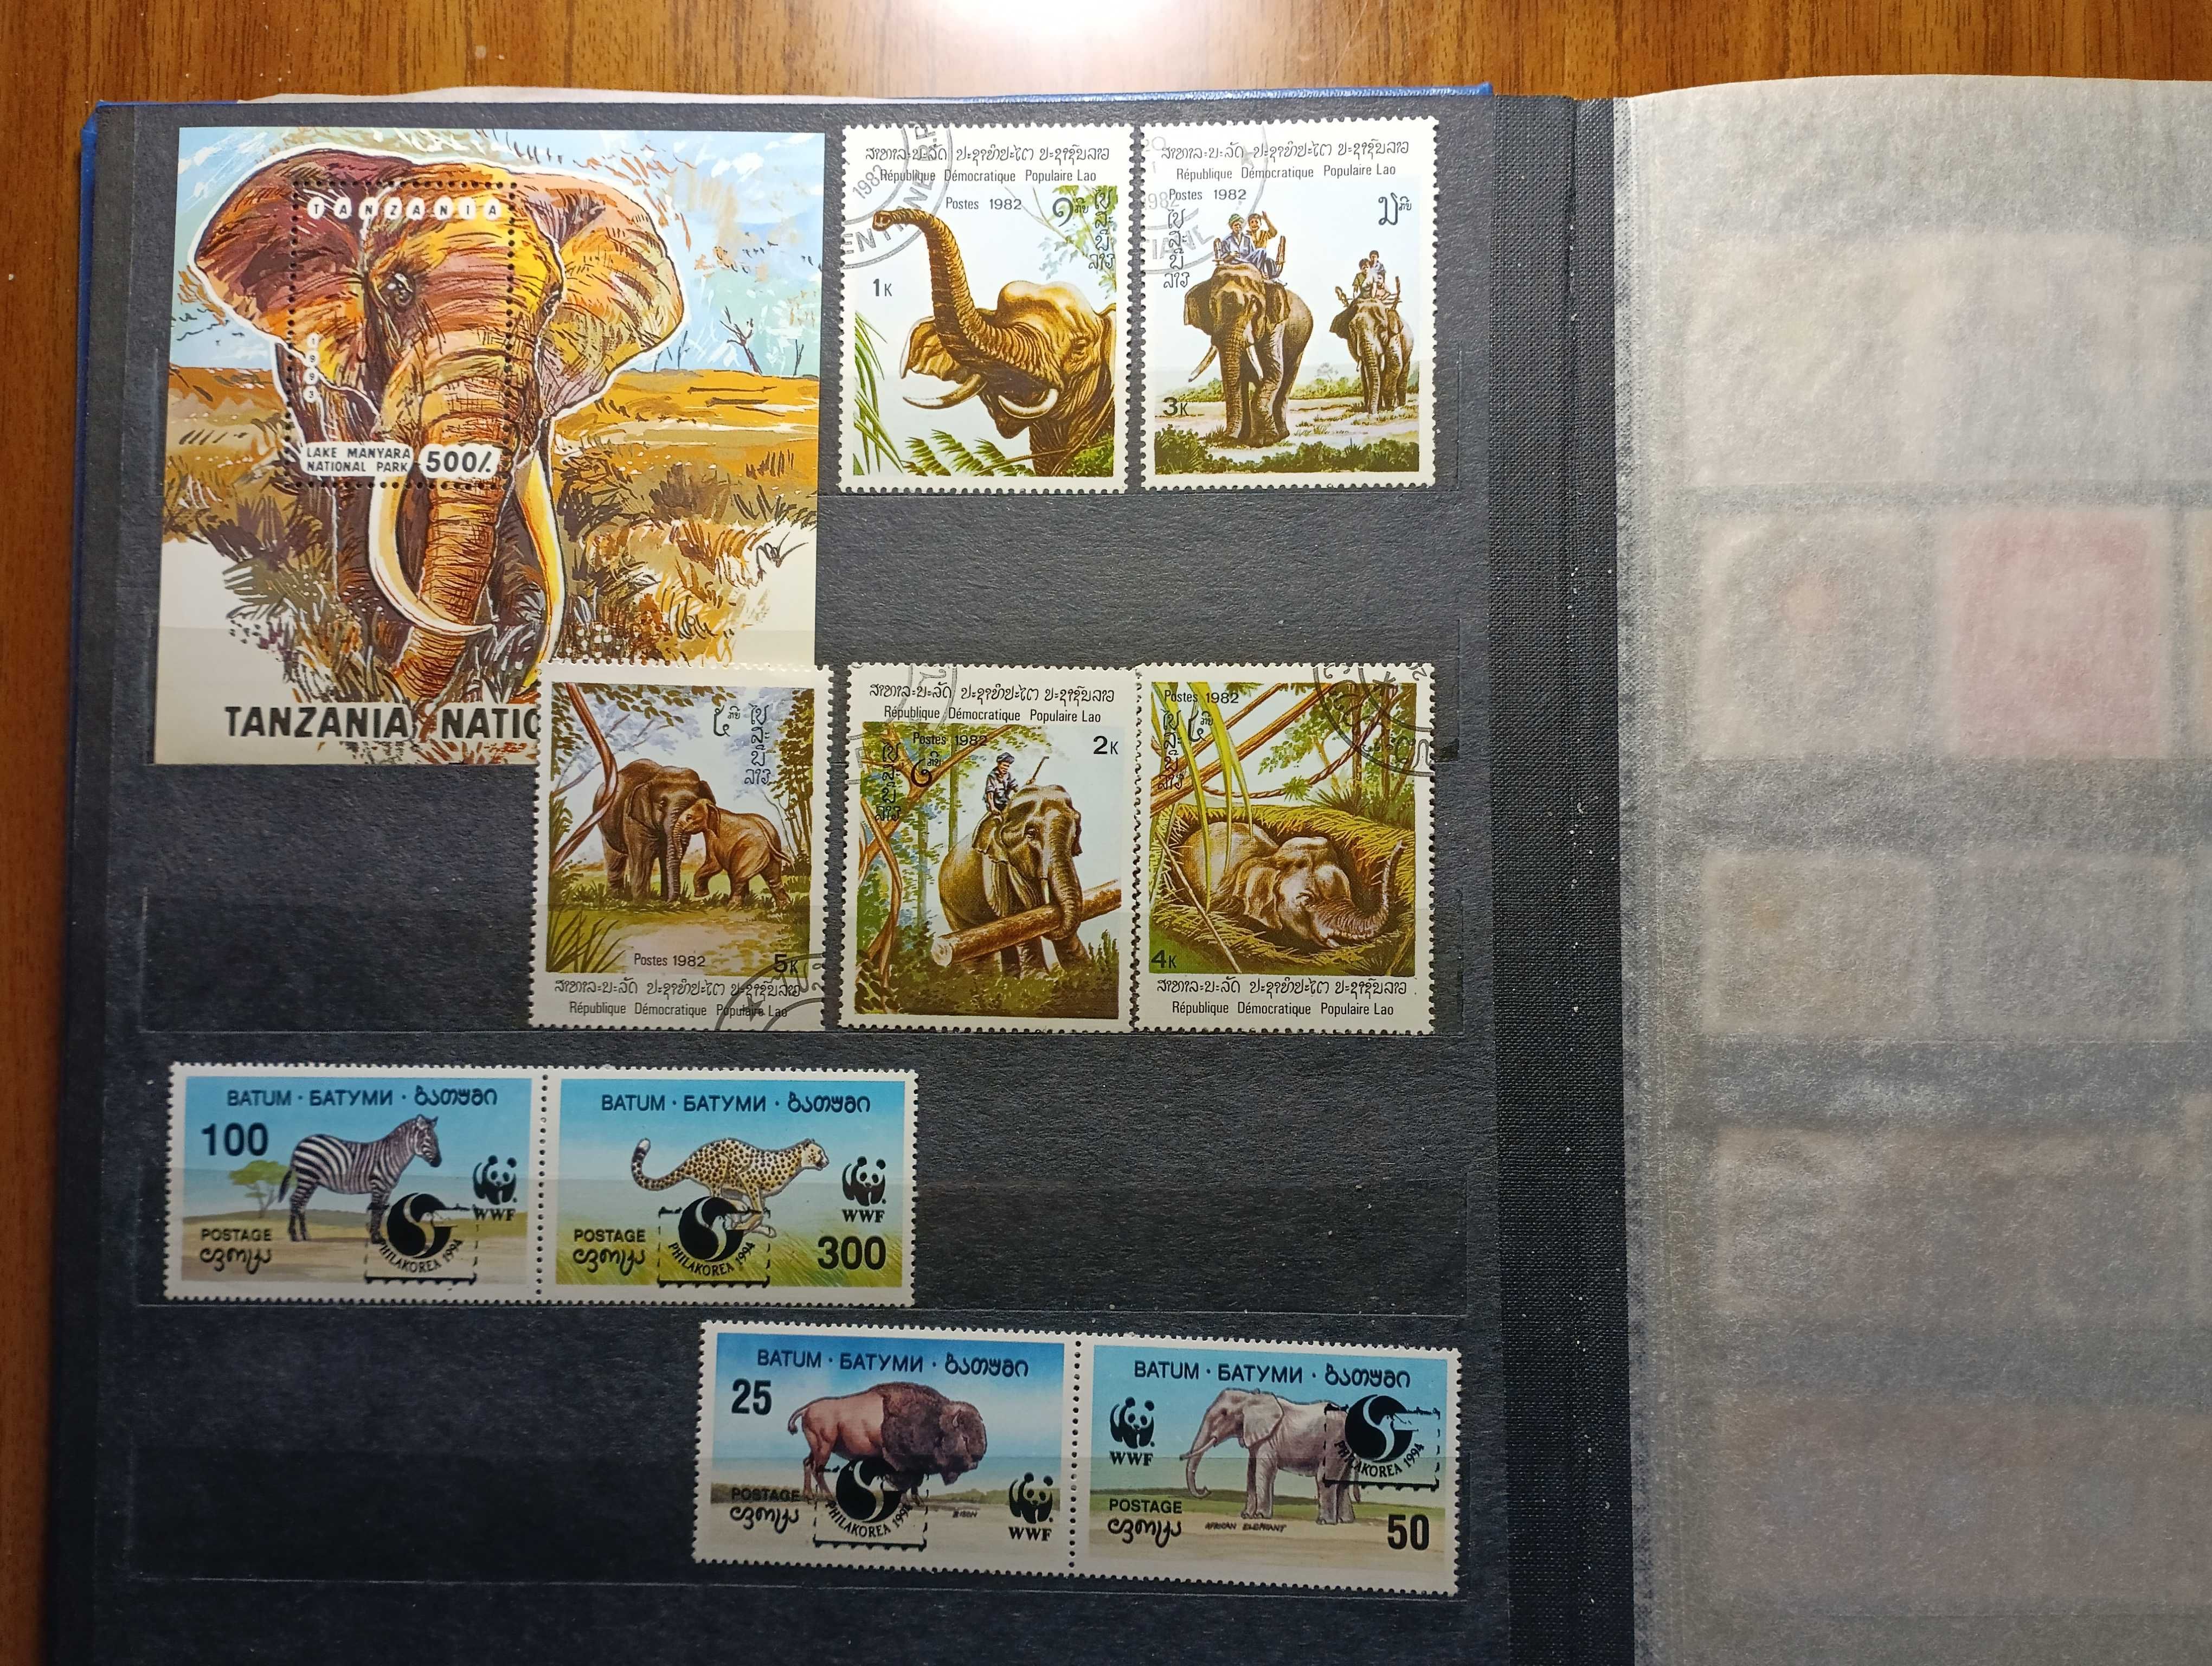 марки блоки фауна львы слоны крокодилы